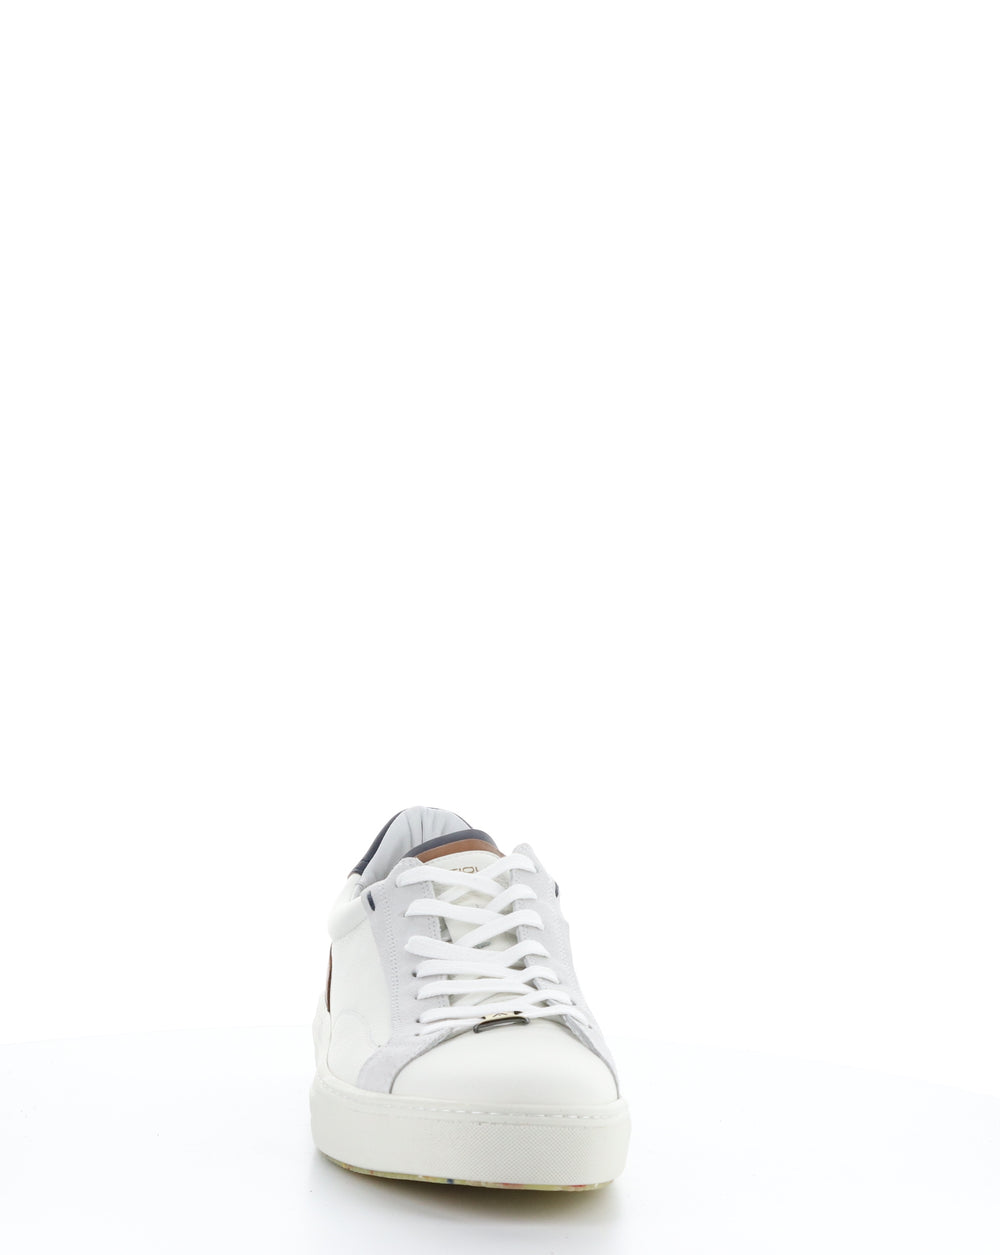 11218 OFF WHITE/COGNAC Lace-up Shoes